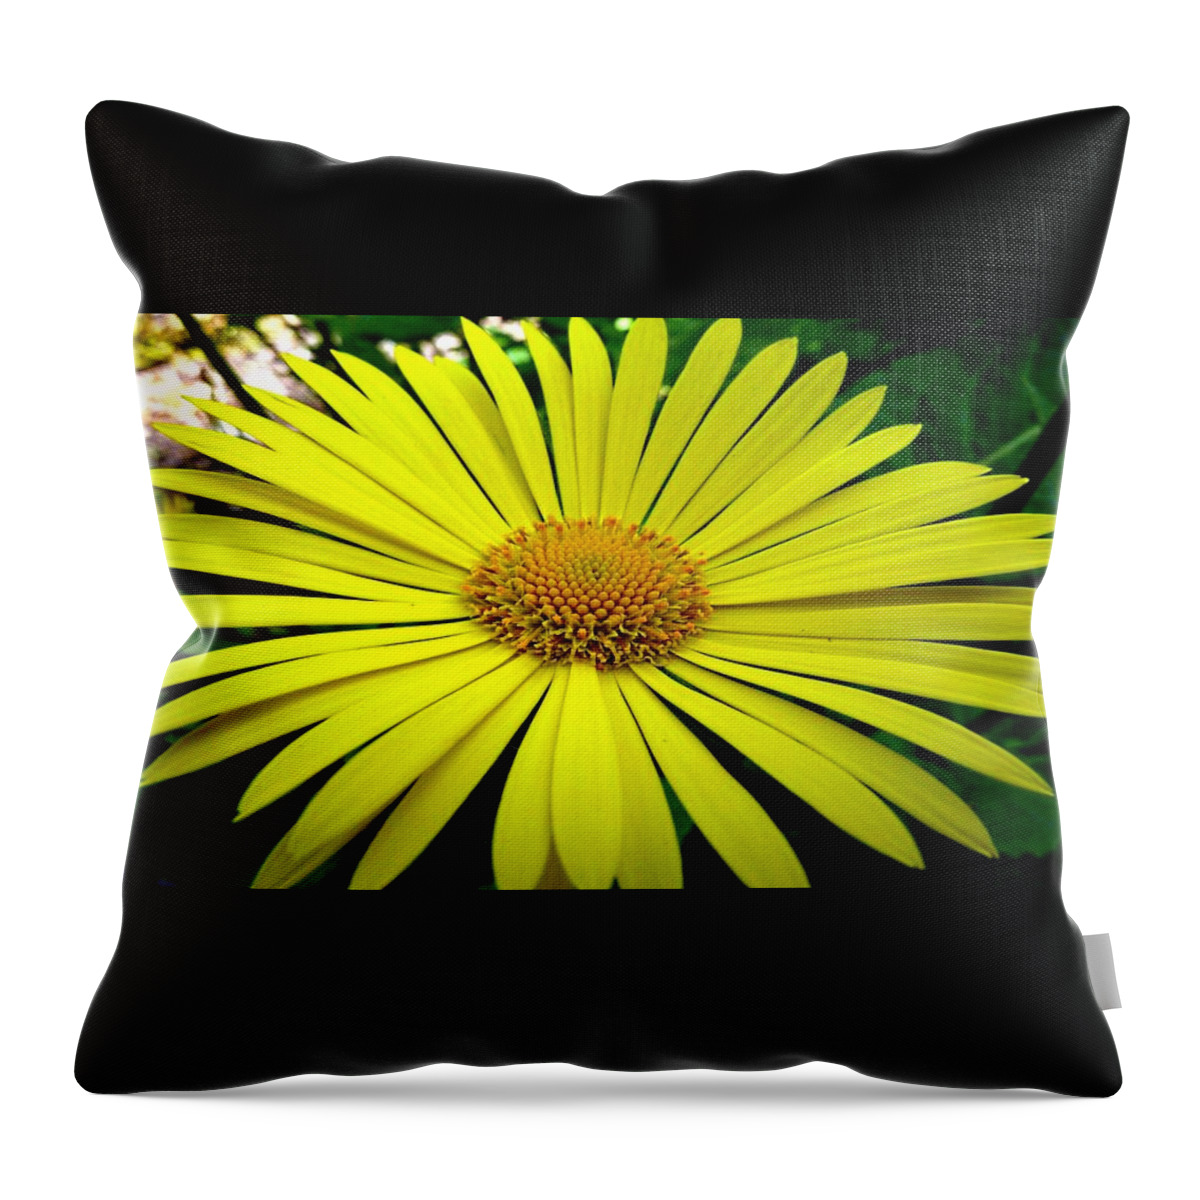 Flower Throw Pillow featuring the digital art Flower #24 by Maye Loeser